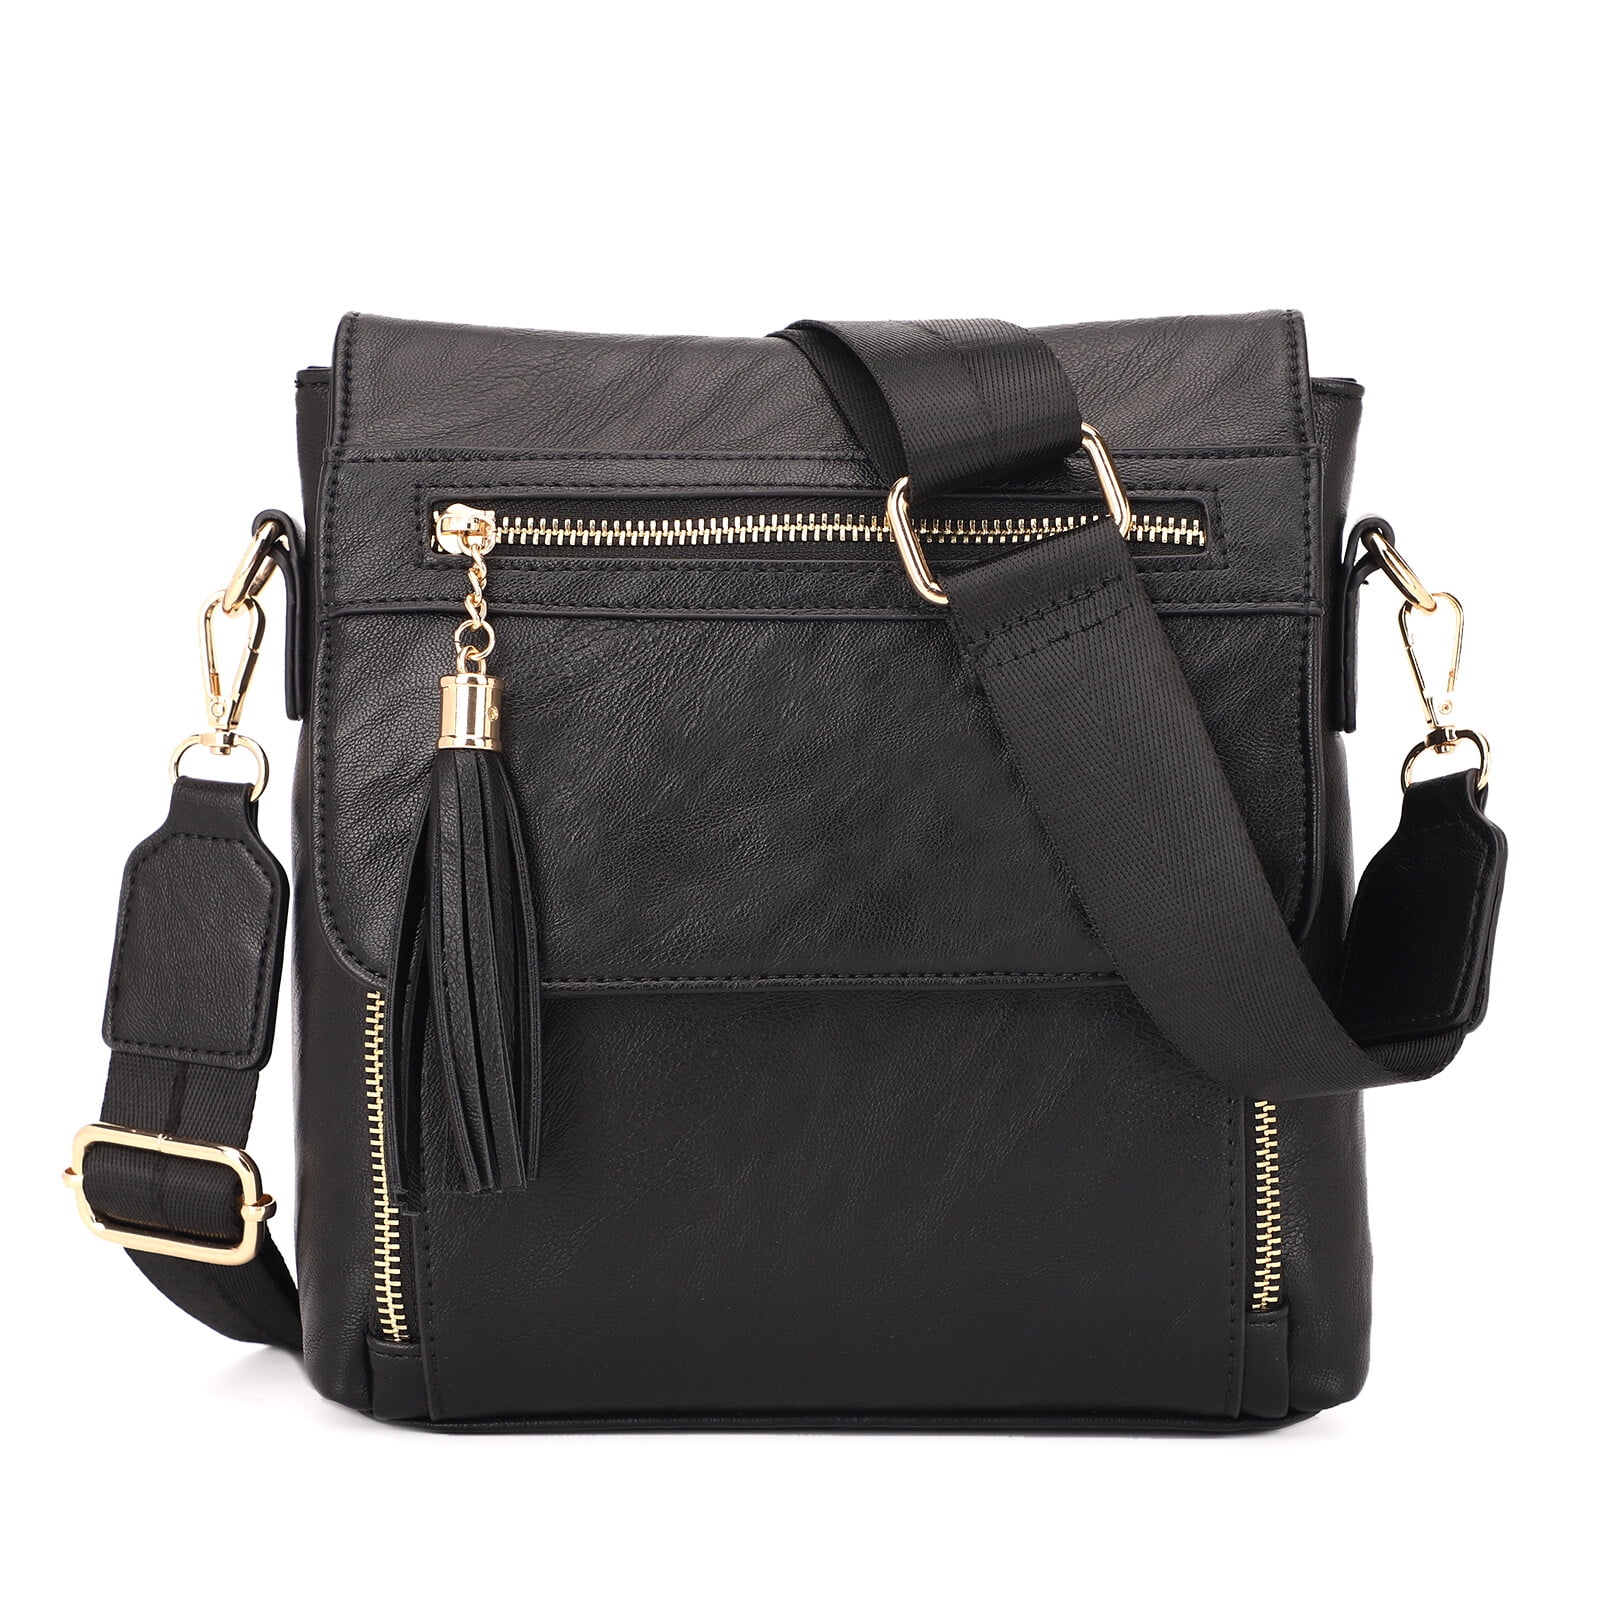 KL928 Crossbody Handbags for Women Medium Crossbody Shoulder Bag with ...